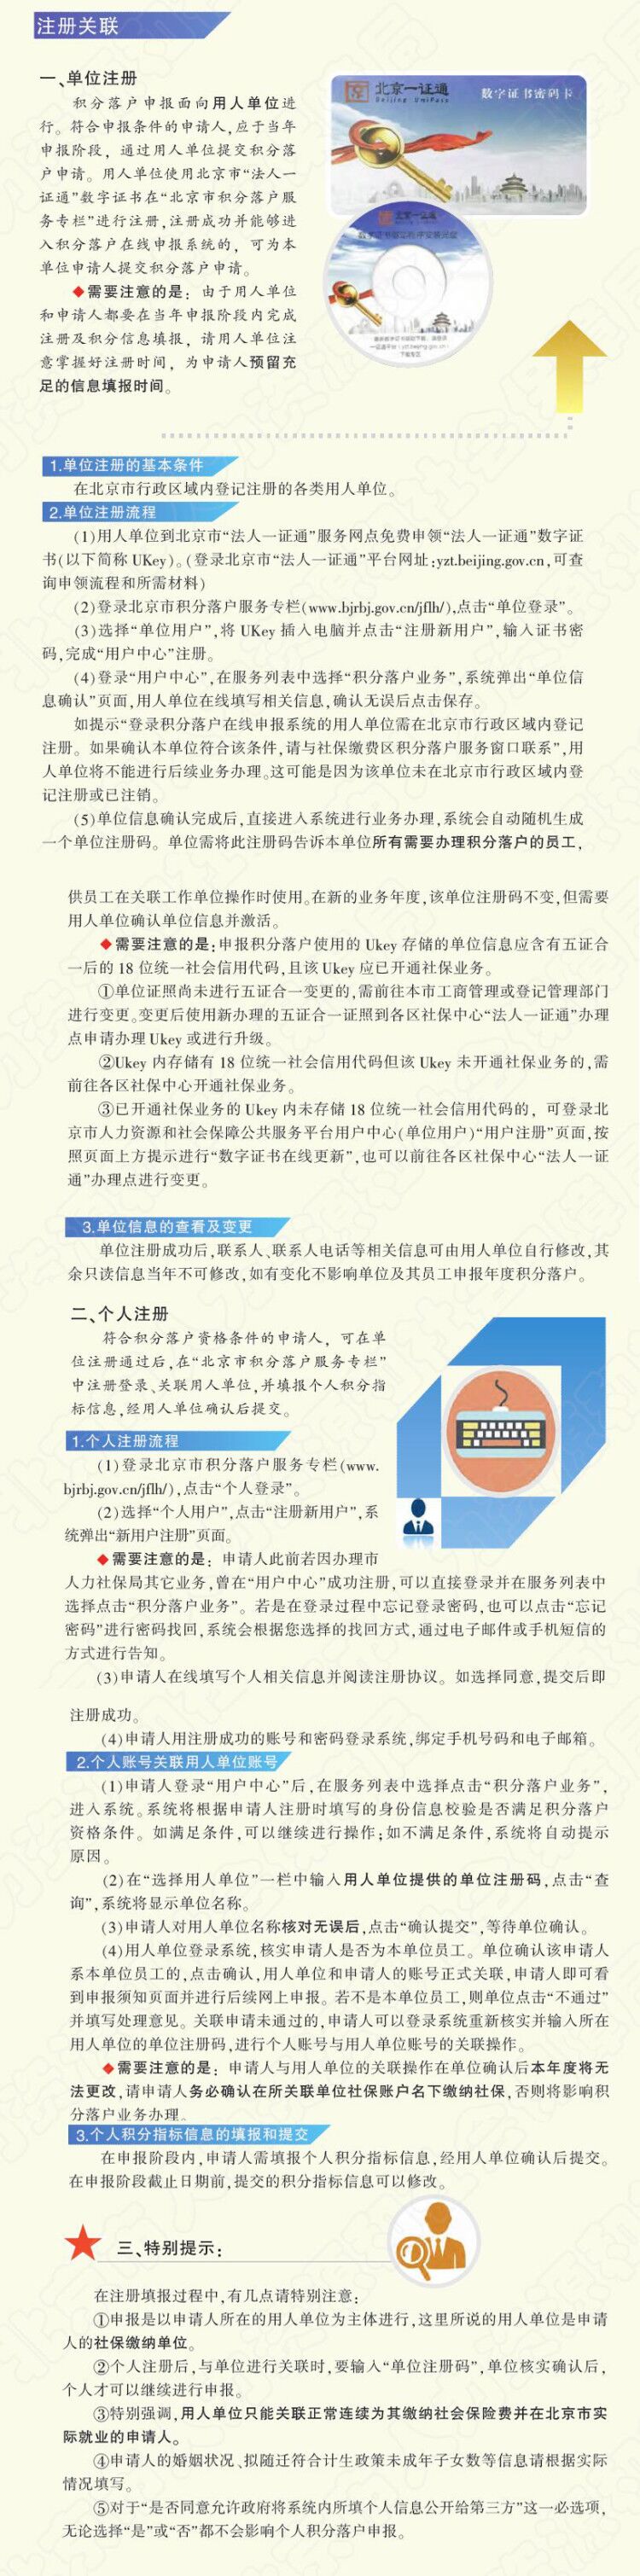 详解北京市积分落户单位注册申报和个人注册申报流程.jpg